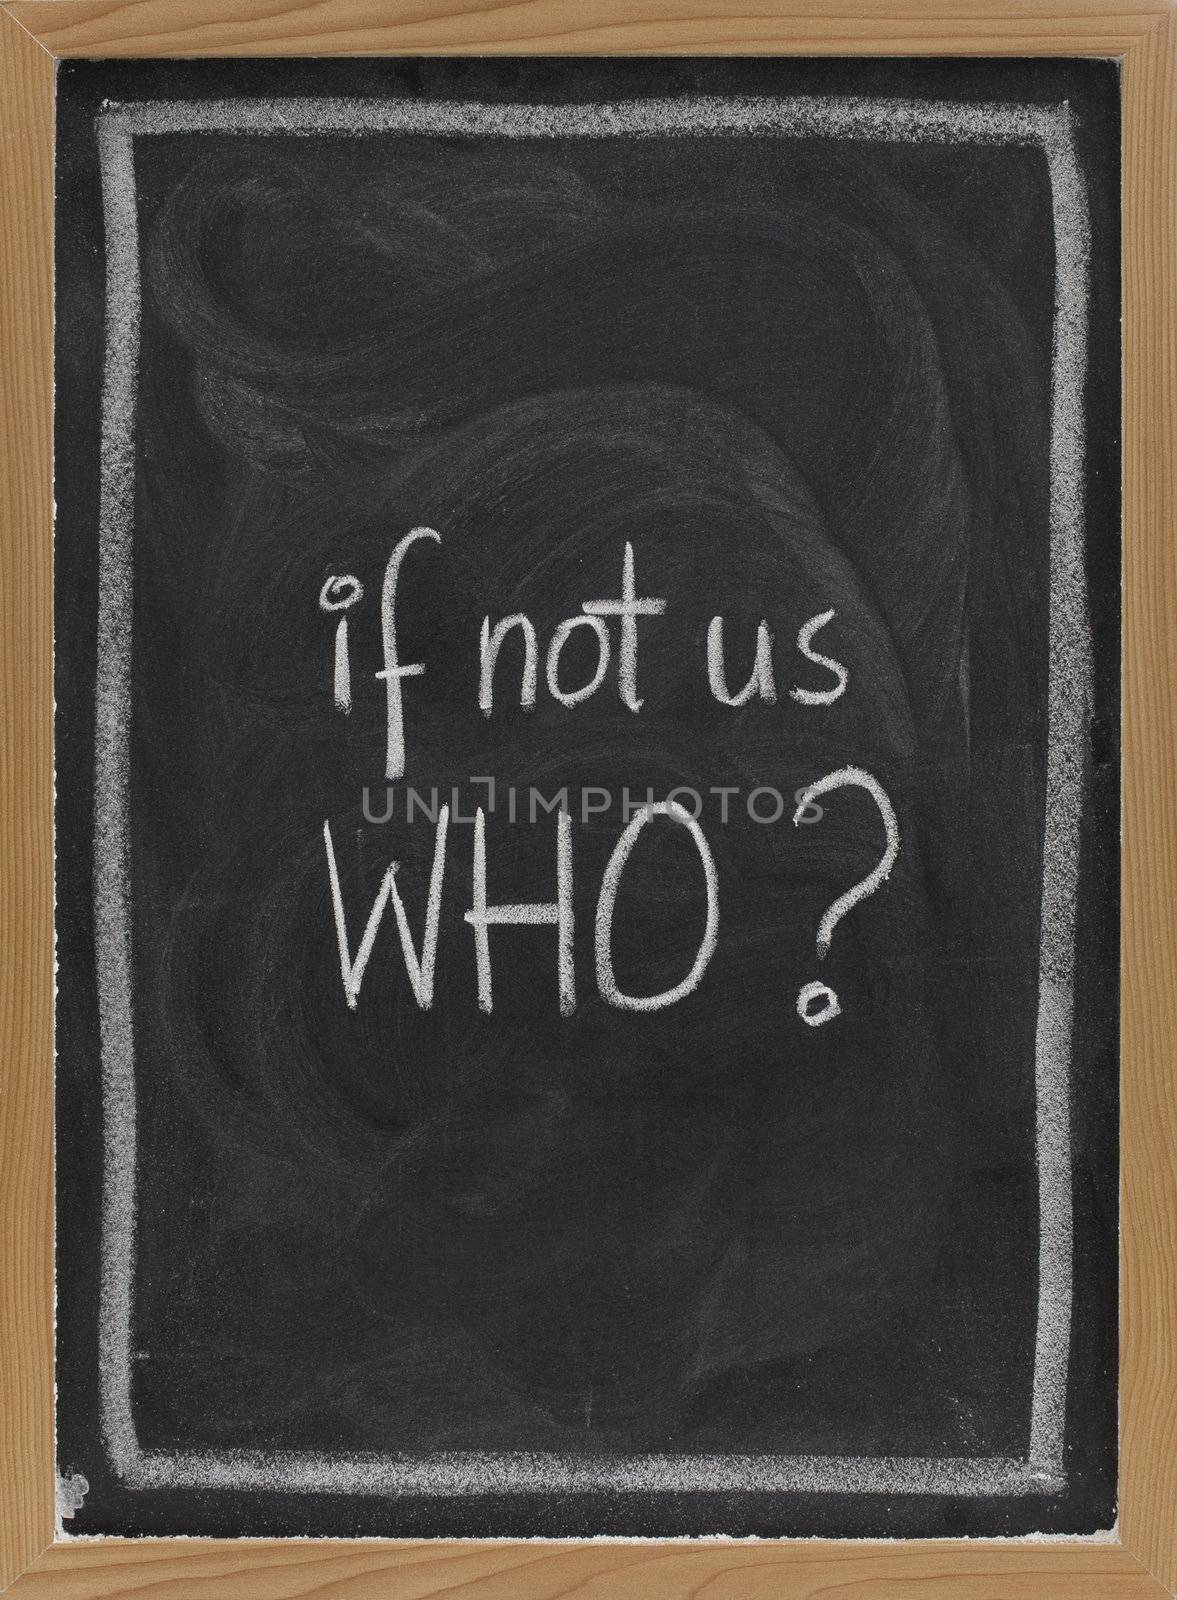 if not us, who - question on blackboard by PixelsAway